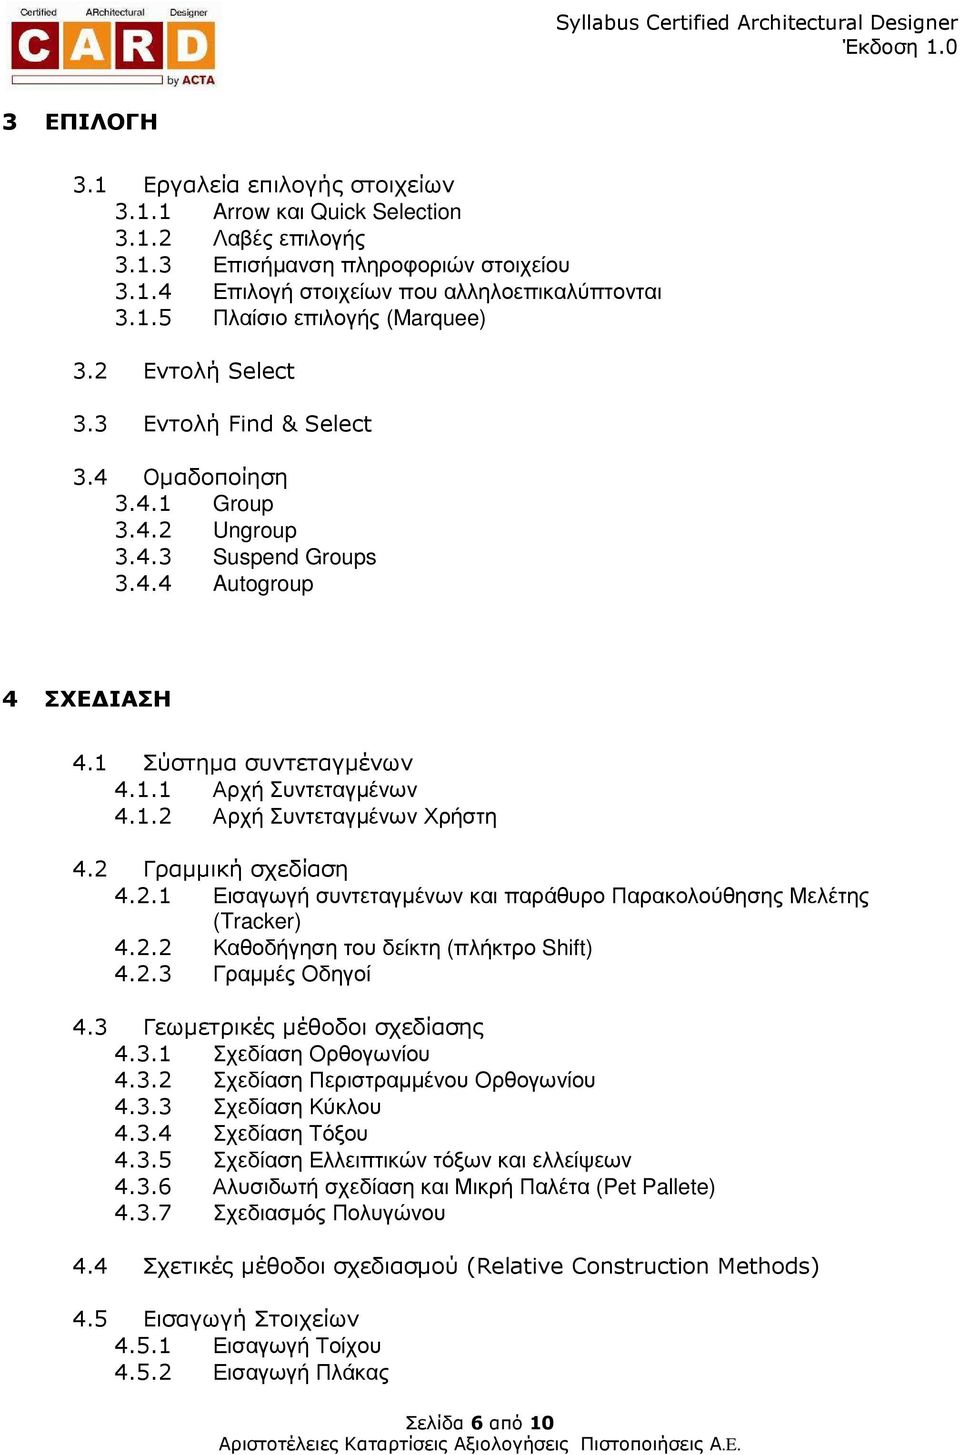 2 Γραµµική σχεδίαση 4.2.1 Εισαγωγή συντεταγµένων και παράθυρο Παρακολούθησης Μελέτης (Tracker) 4.2.2 Καθοδήγηση του δείκτη (πλήκτρο Shift) 4.2.3 Γραµµές Οδηγοί 4.3 Γεωµετρικές µέθοδοι σχεδίασης 4.3.1 Σχεδίαση Ορθογωνίου 4.